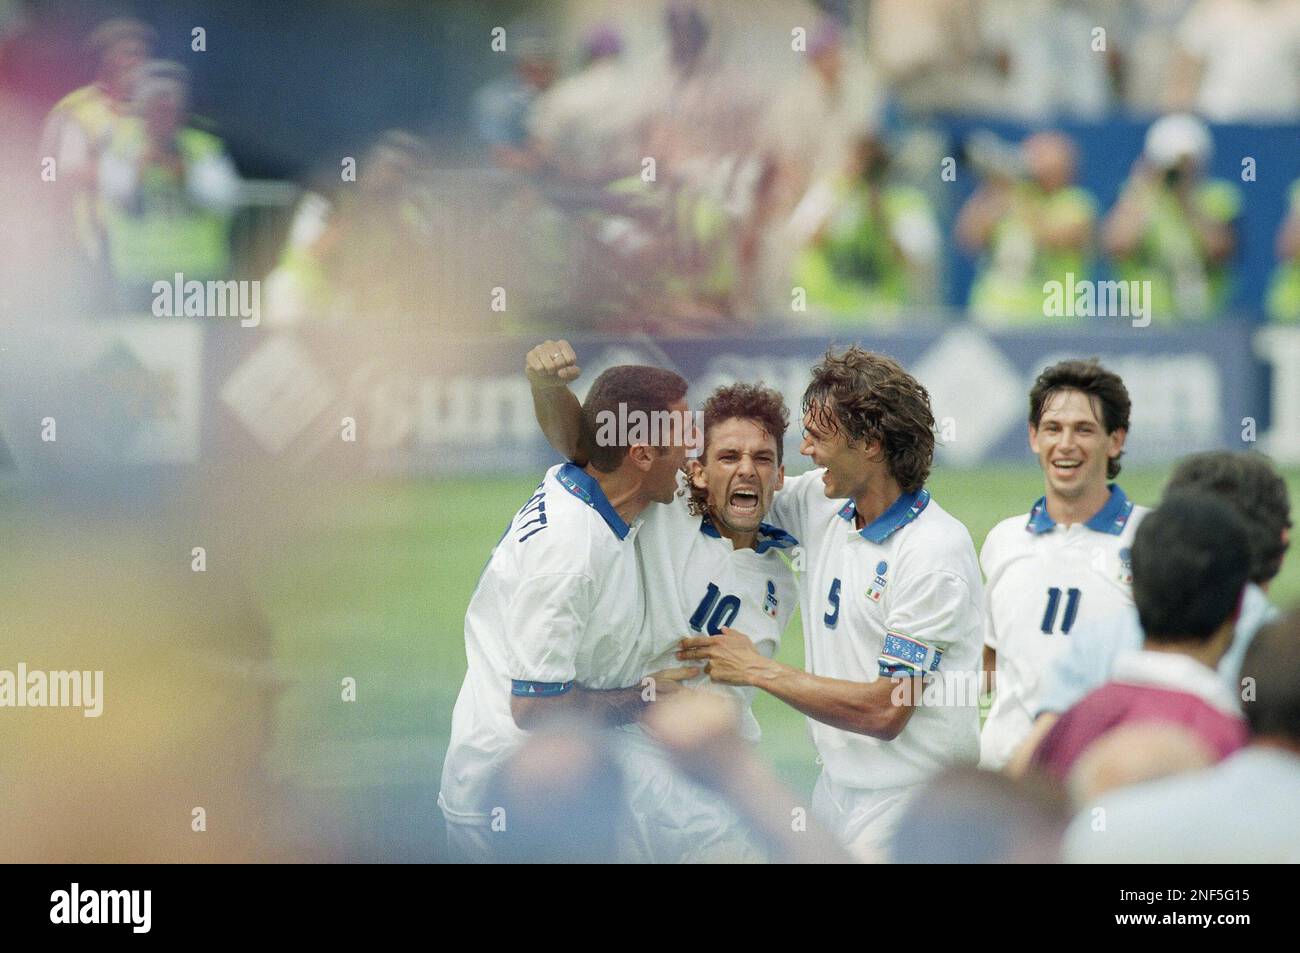 Vintage 10 Roberto Baggio Jersey 1994 World Cup Italy Soccer 